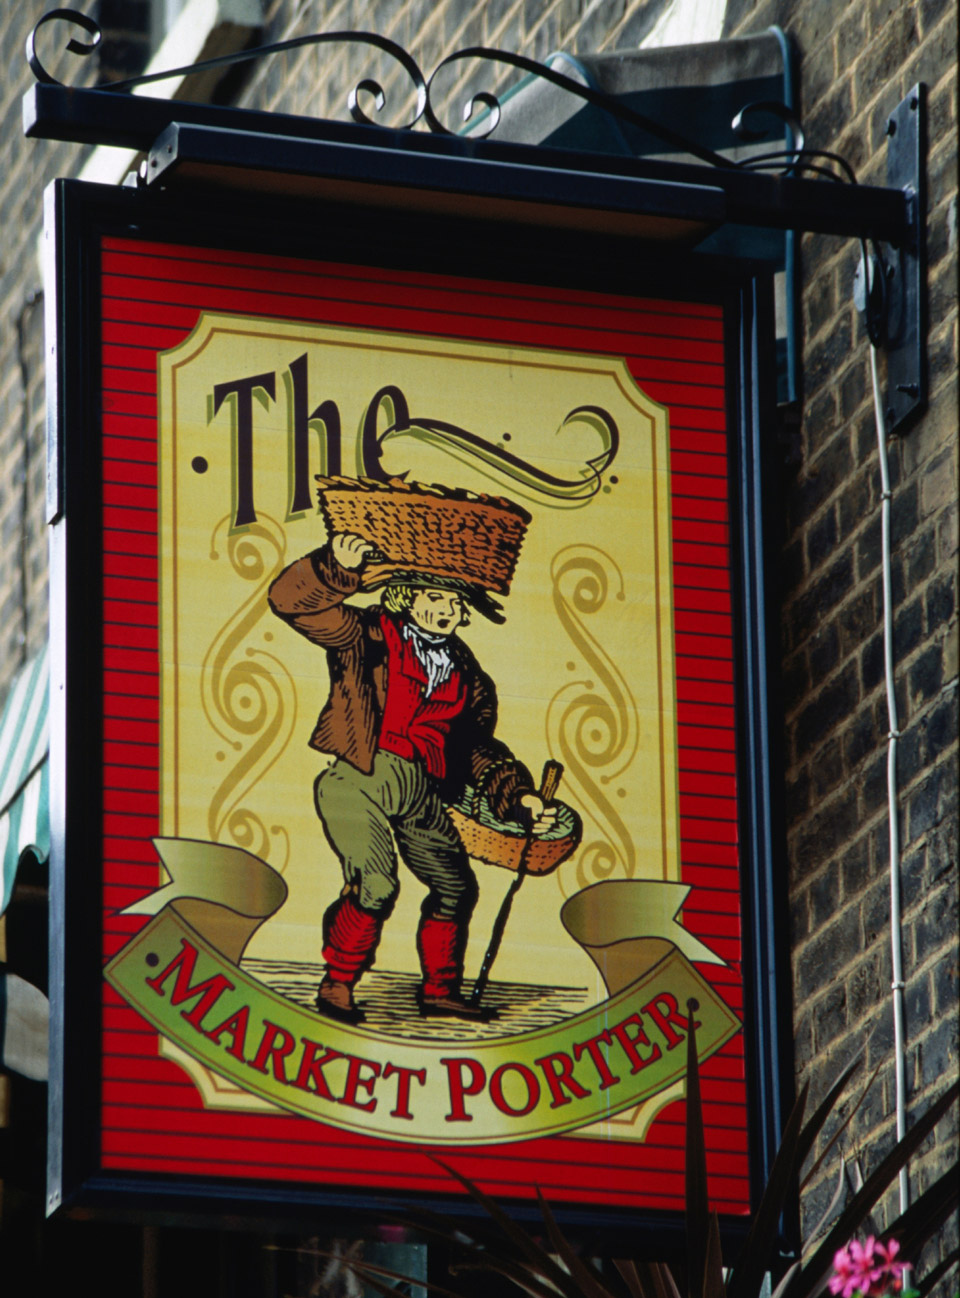 Frühausschank gibt es im Market Porter - (Foto: ©Neil Setchfield/Lonely Planet)